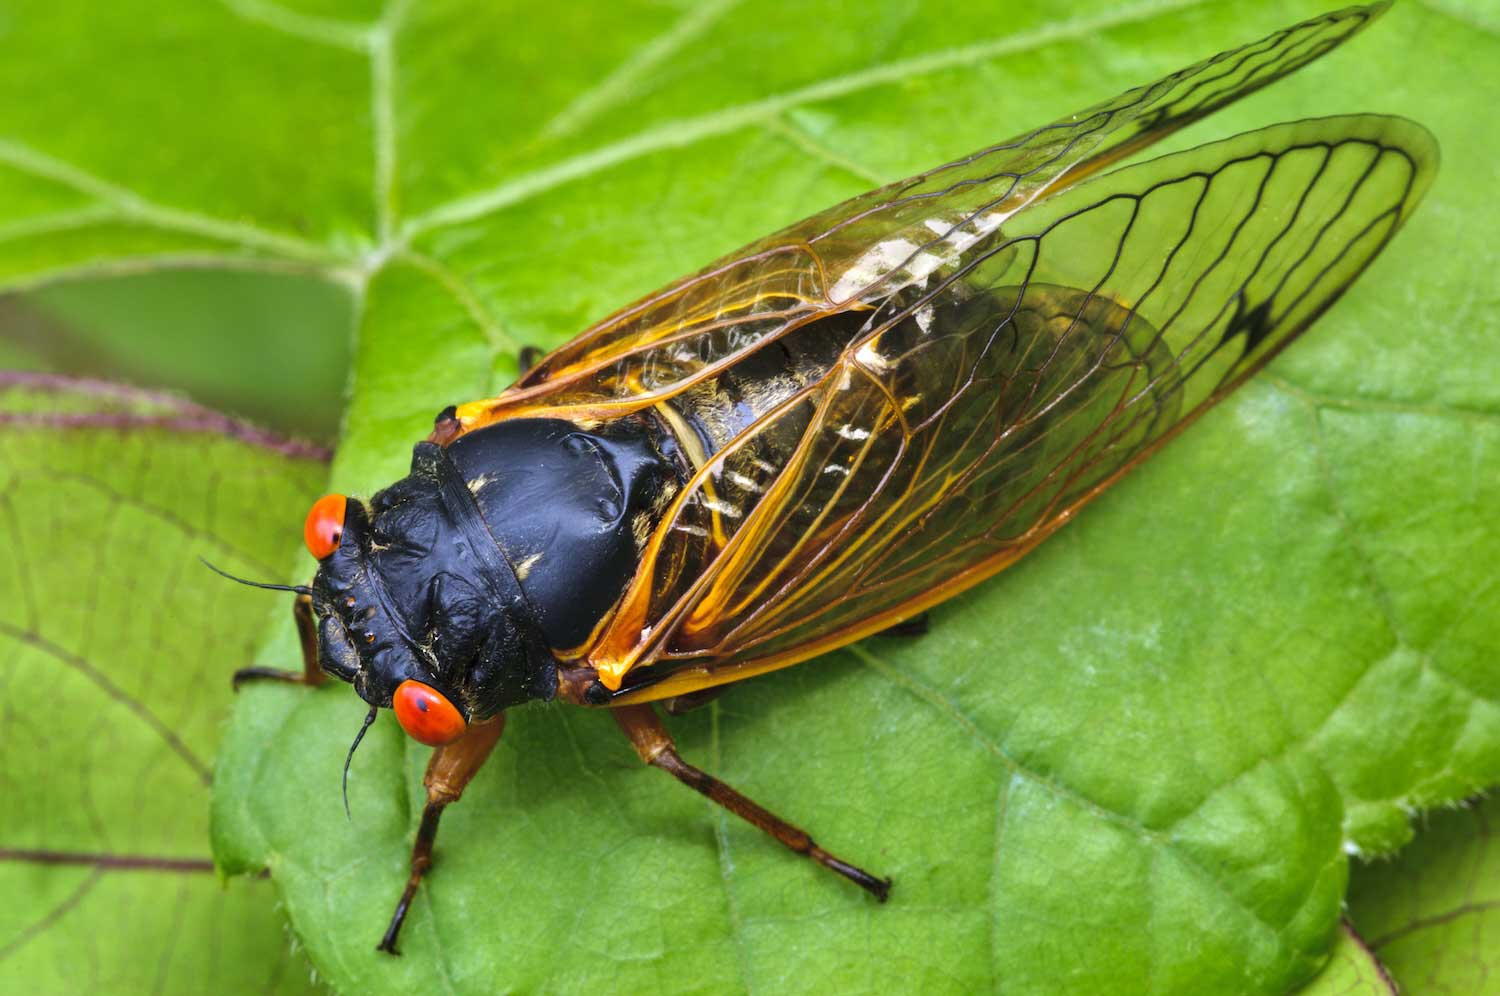 A cicada on a green leaf.